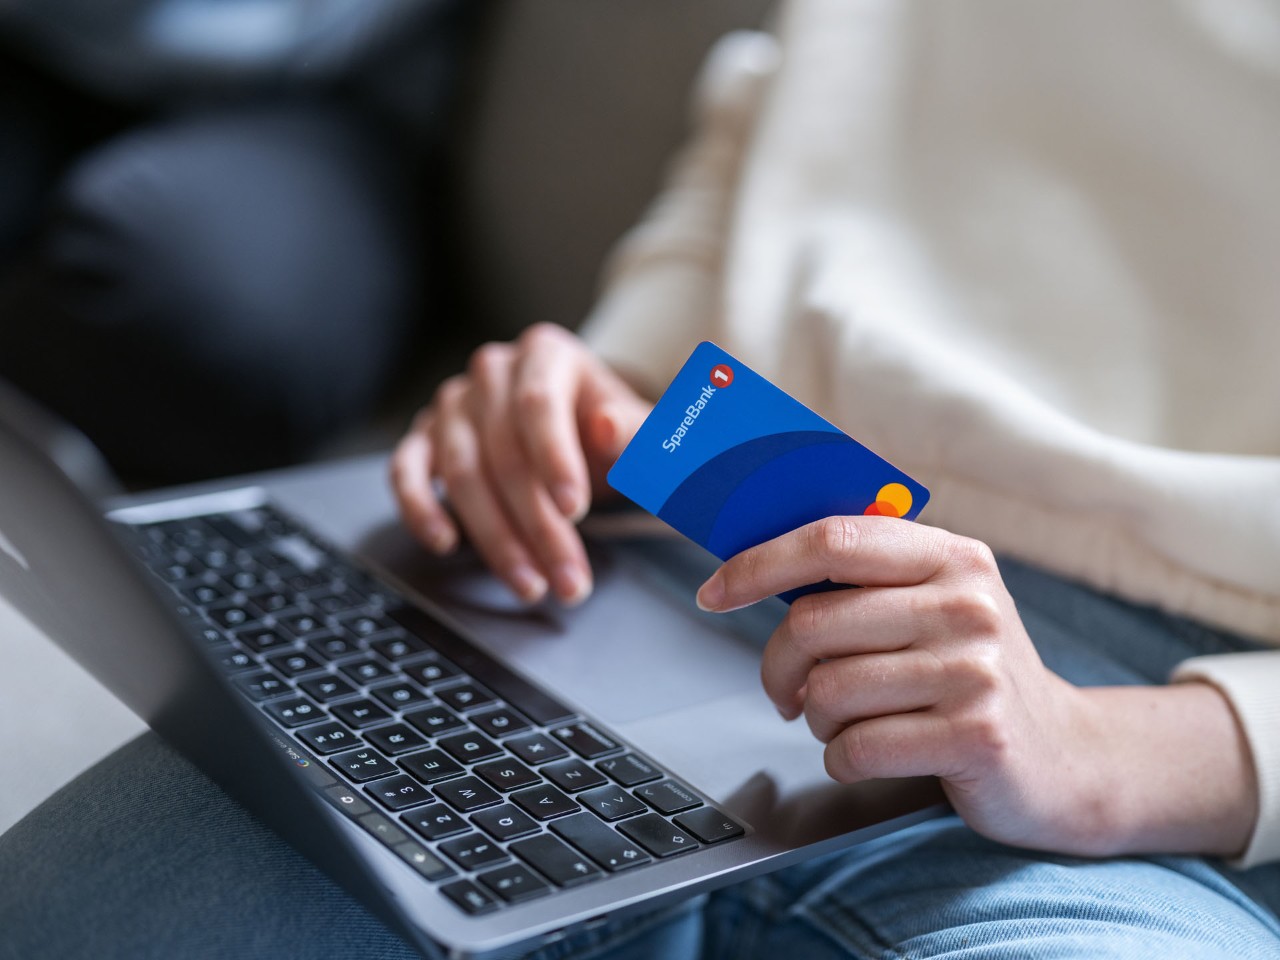 Netthandel på pc med kredittkort